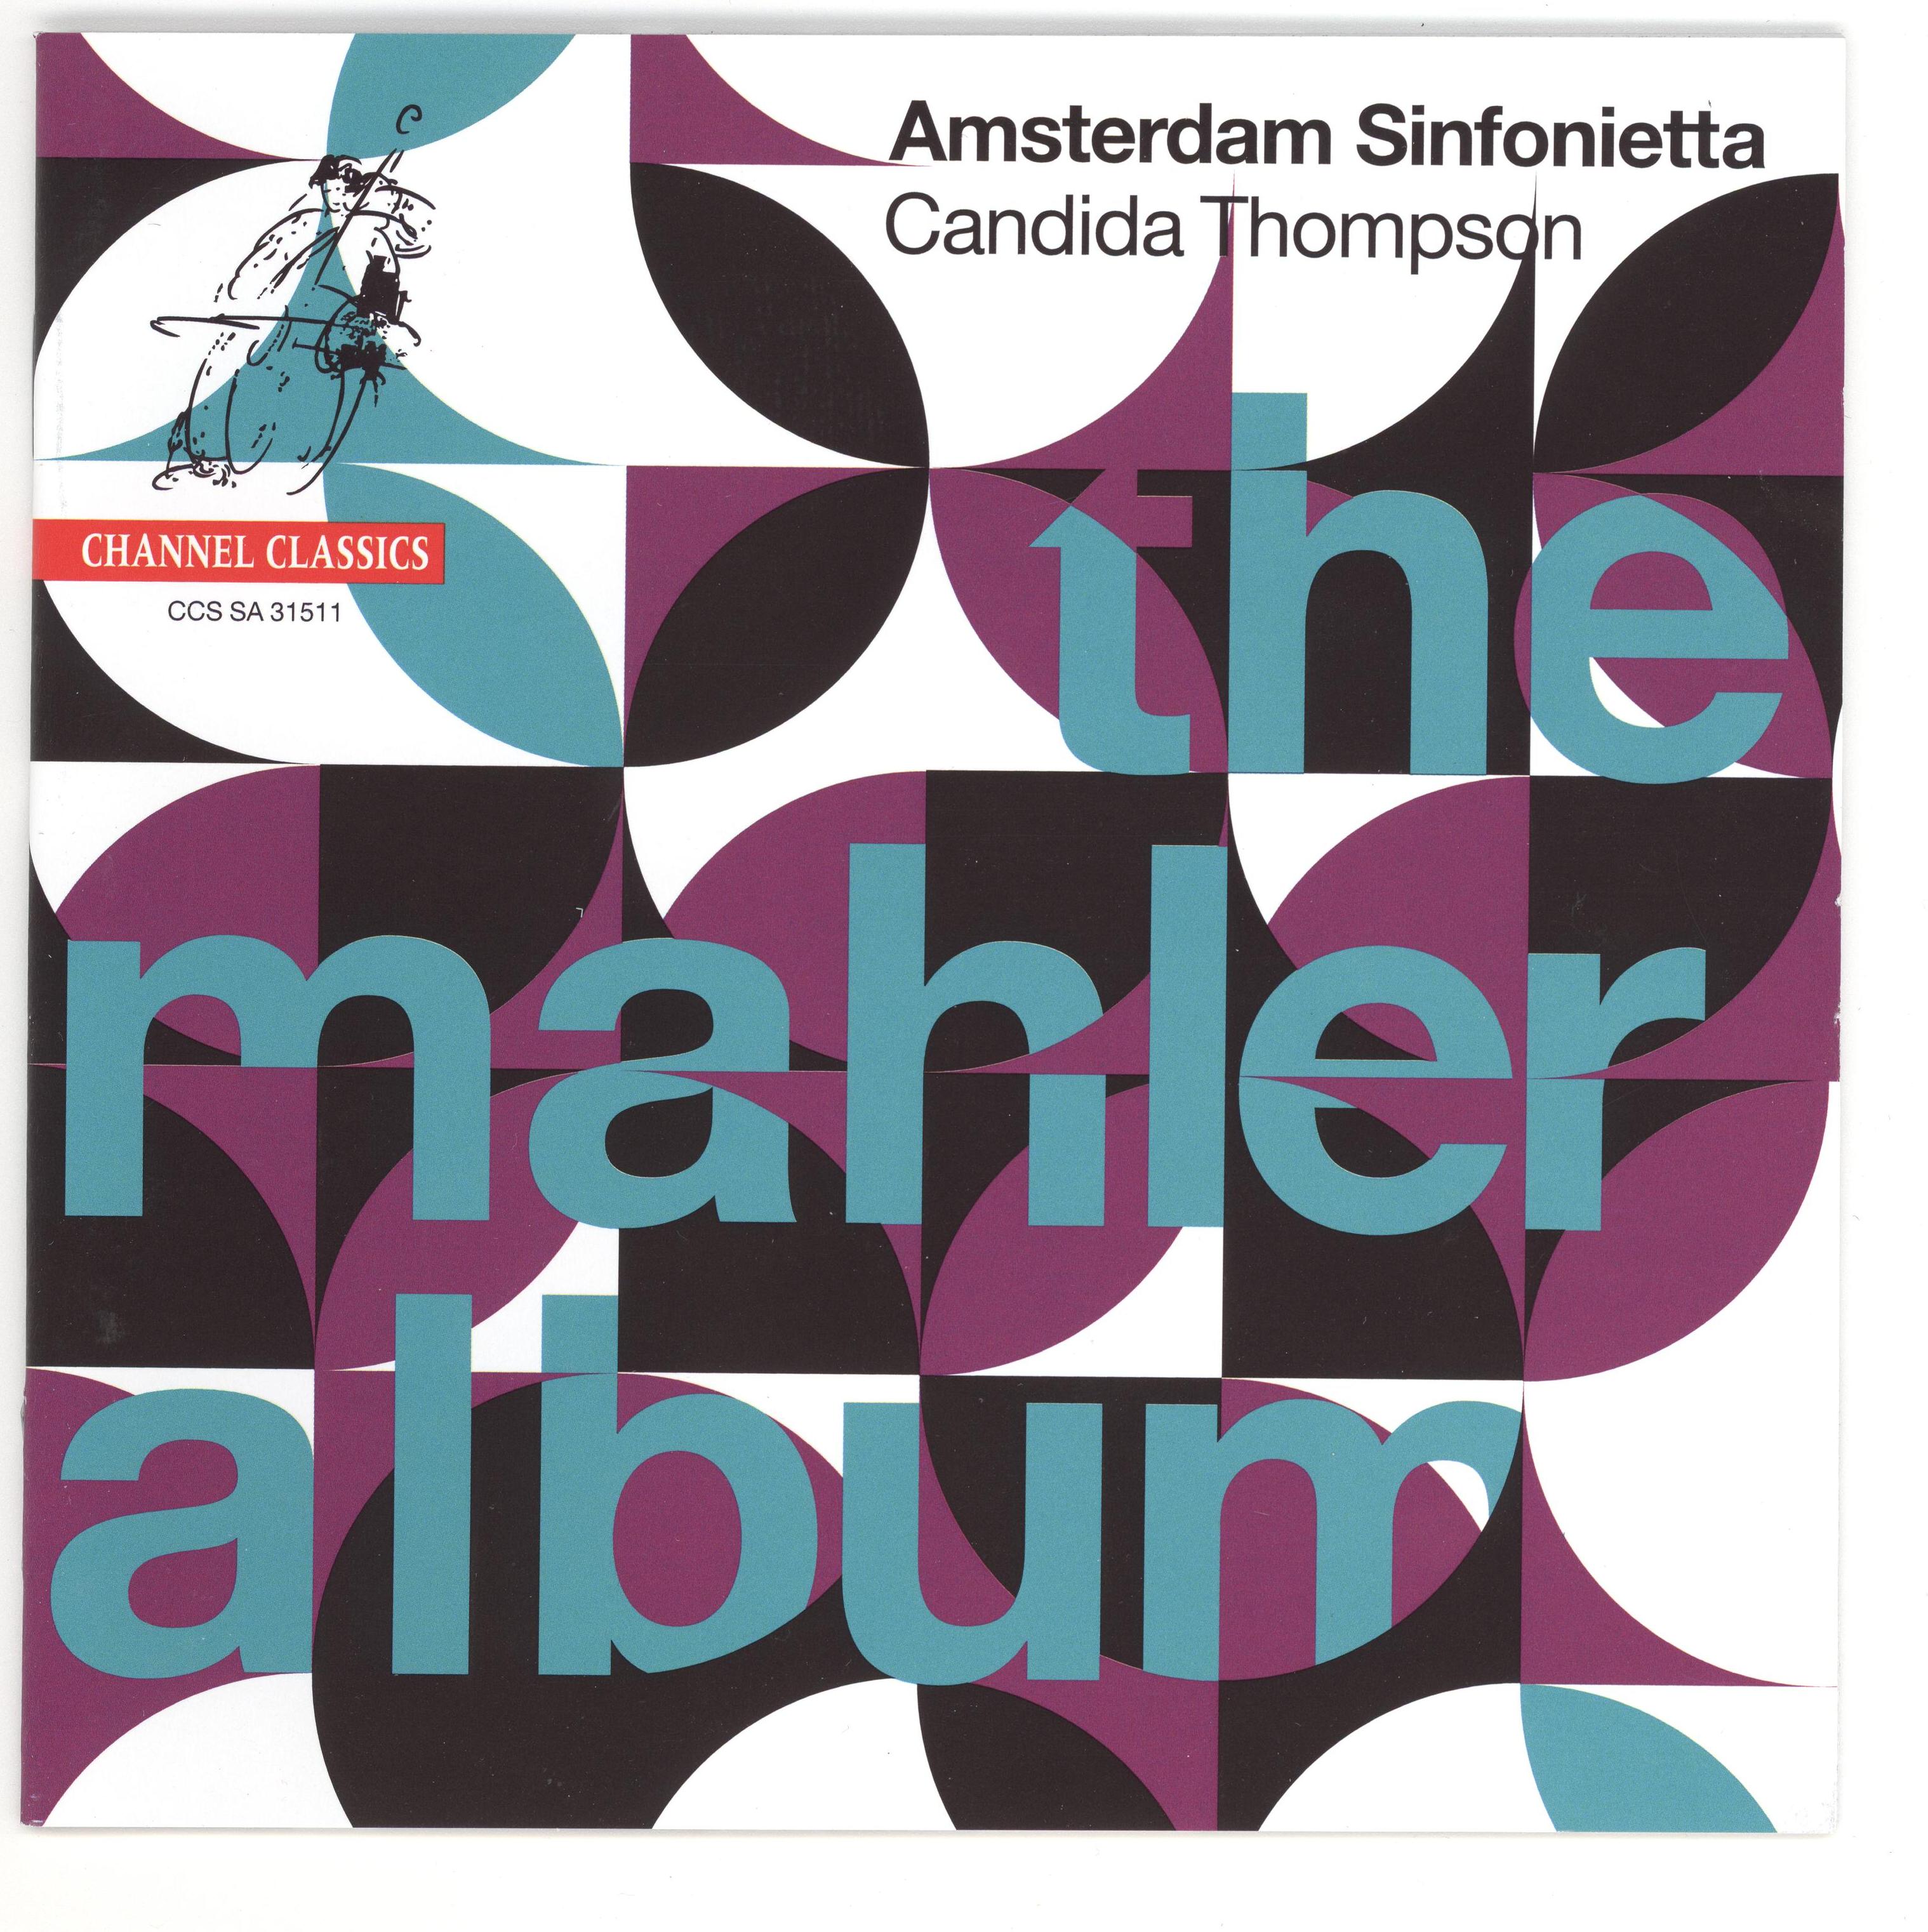 The Mahler Album - front - outside.jpg